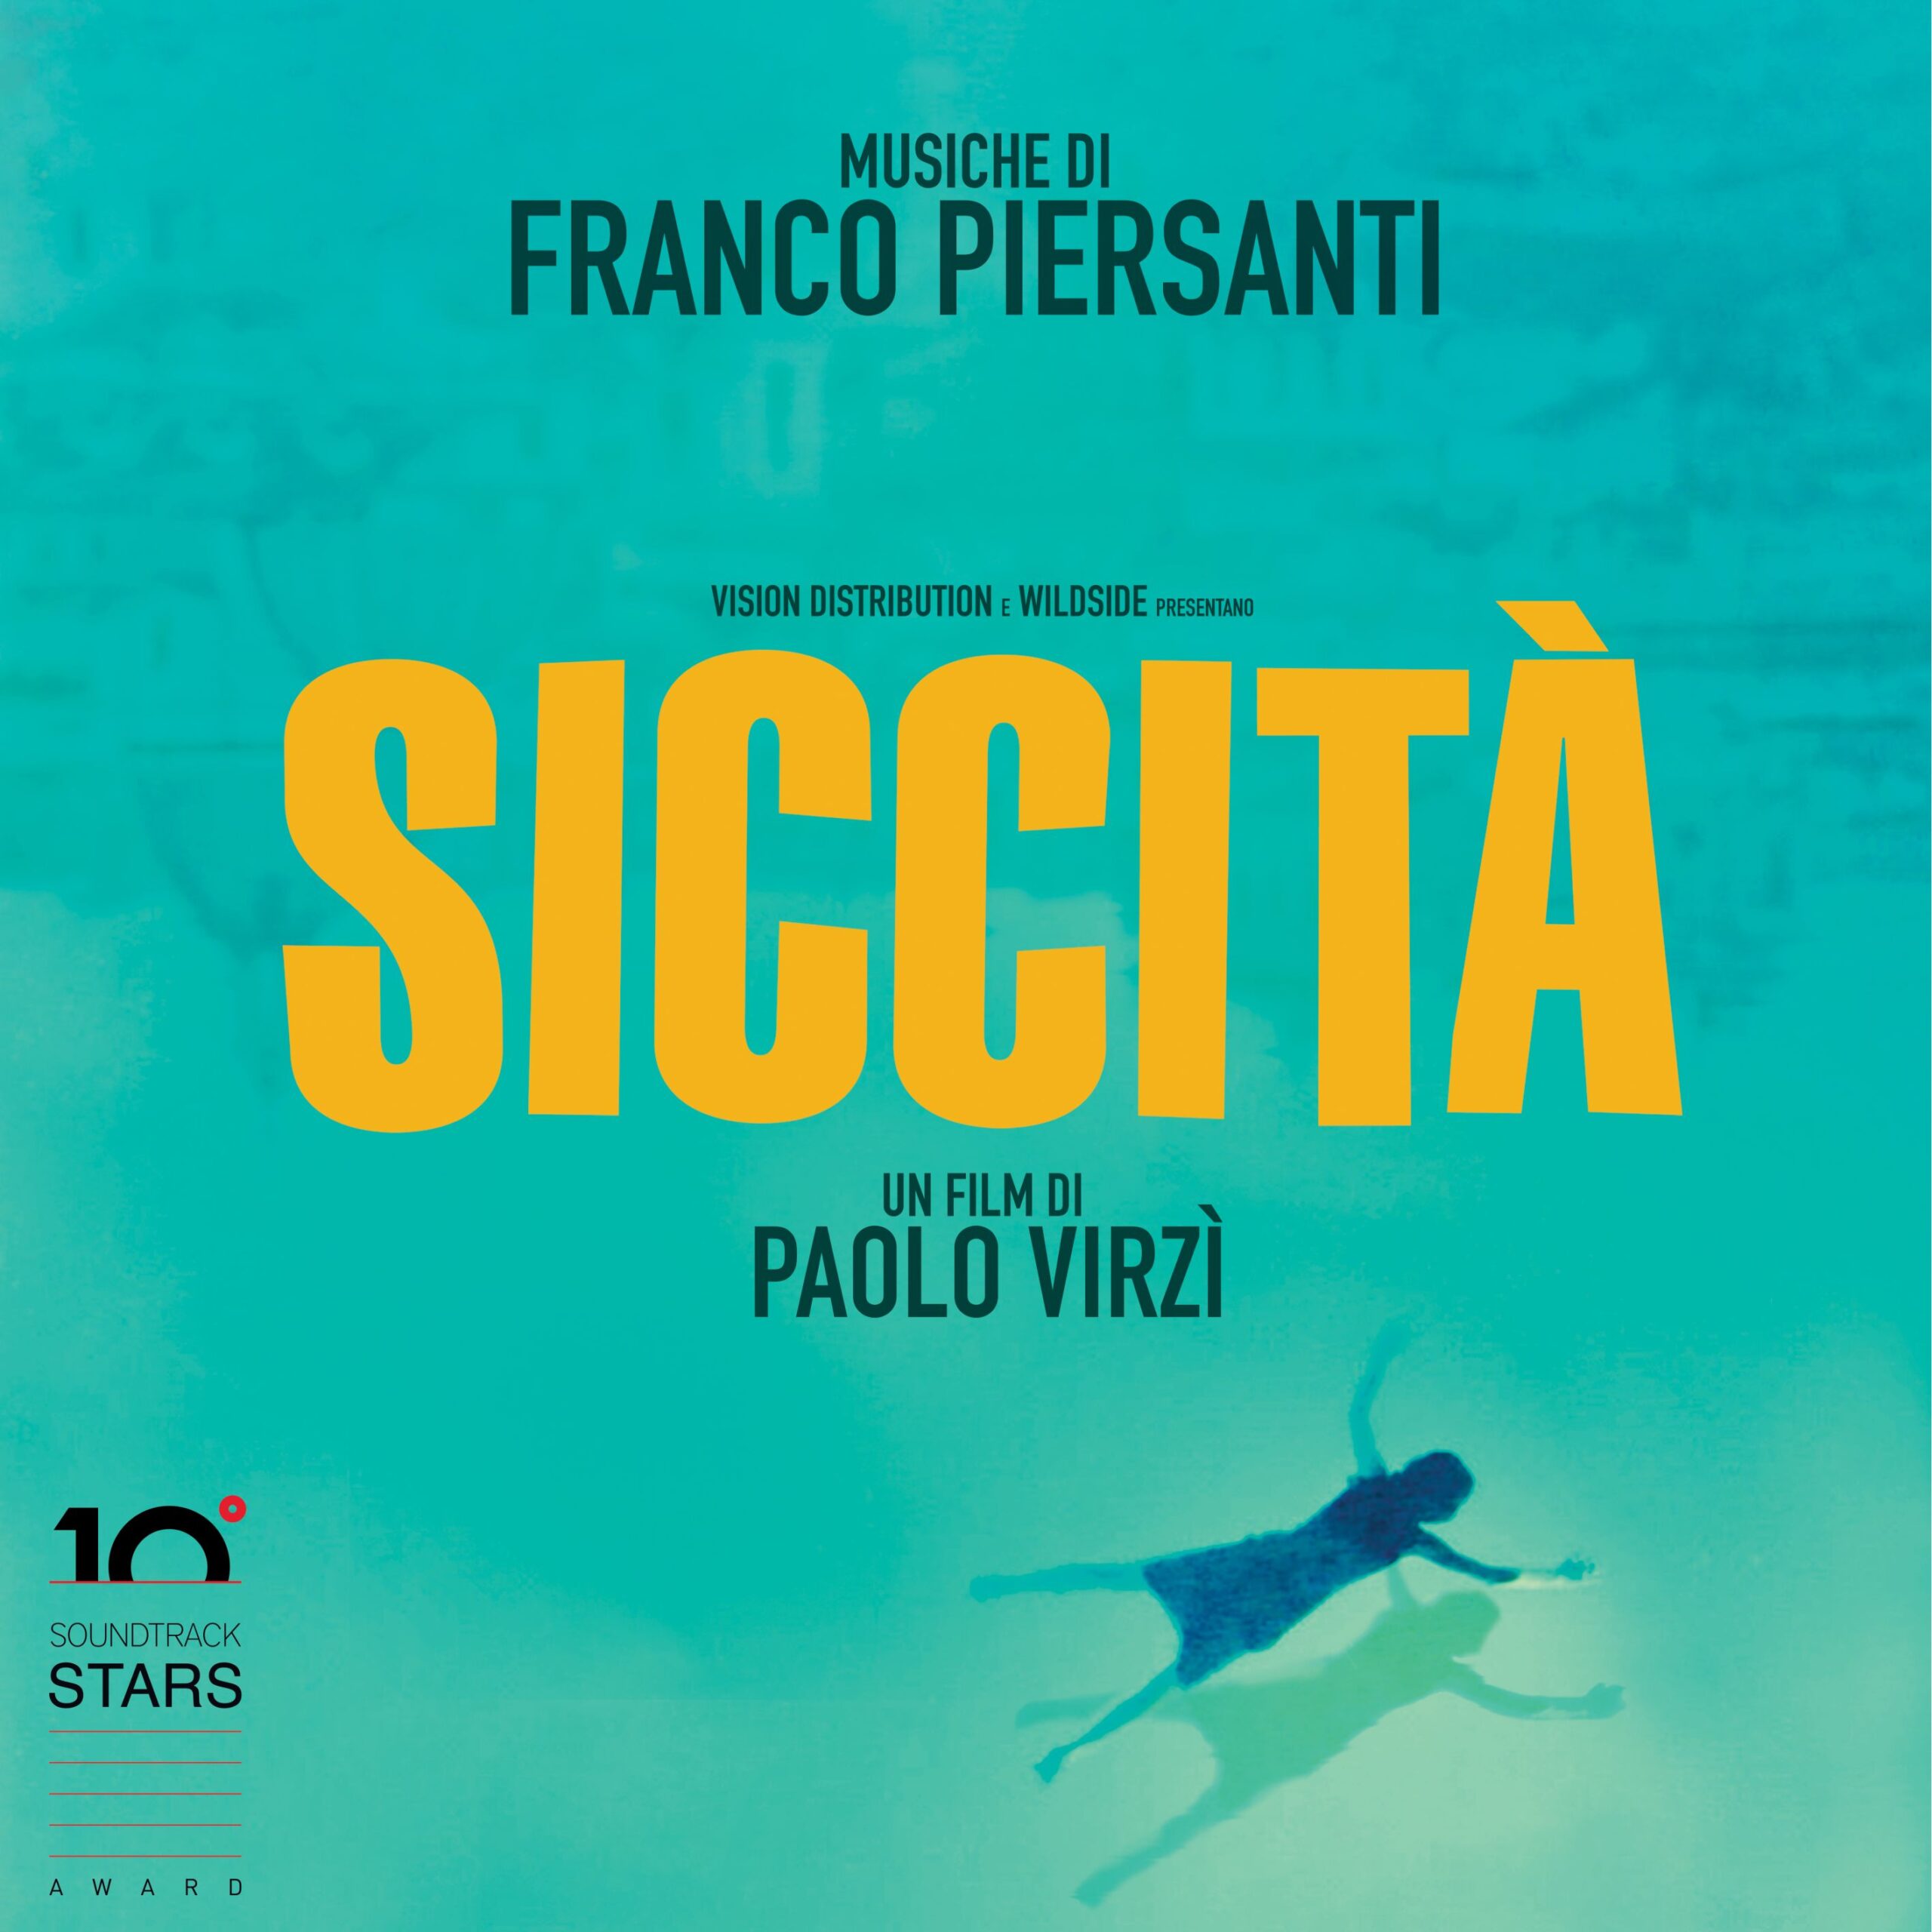 Venerdì 31 marzo al Teatro Piccinni di Bari, nell’ambito del BIF&ST, Franco Piersanti ritira il Premio Ennio Morricone